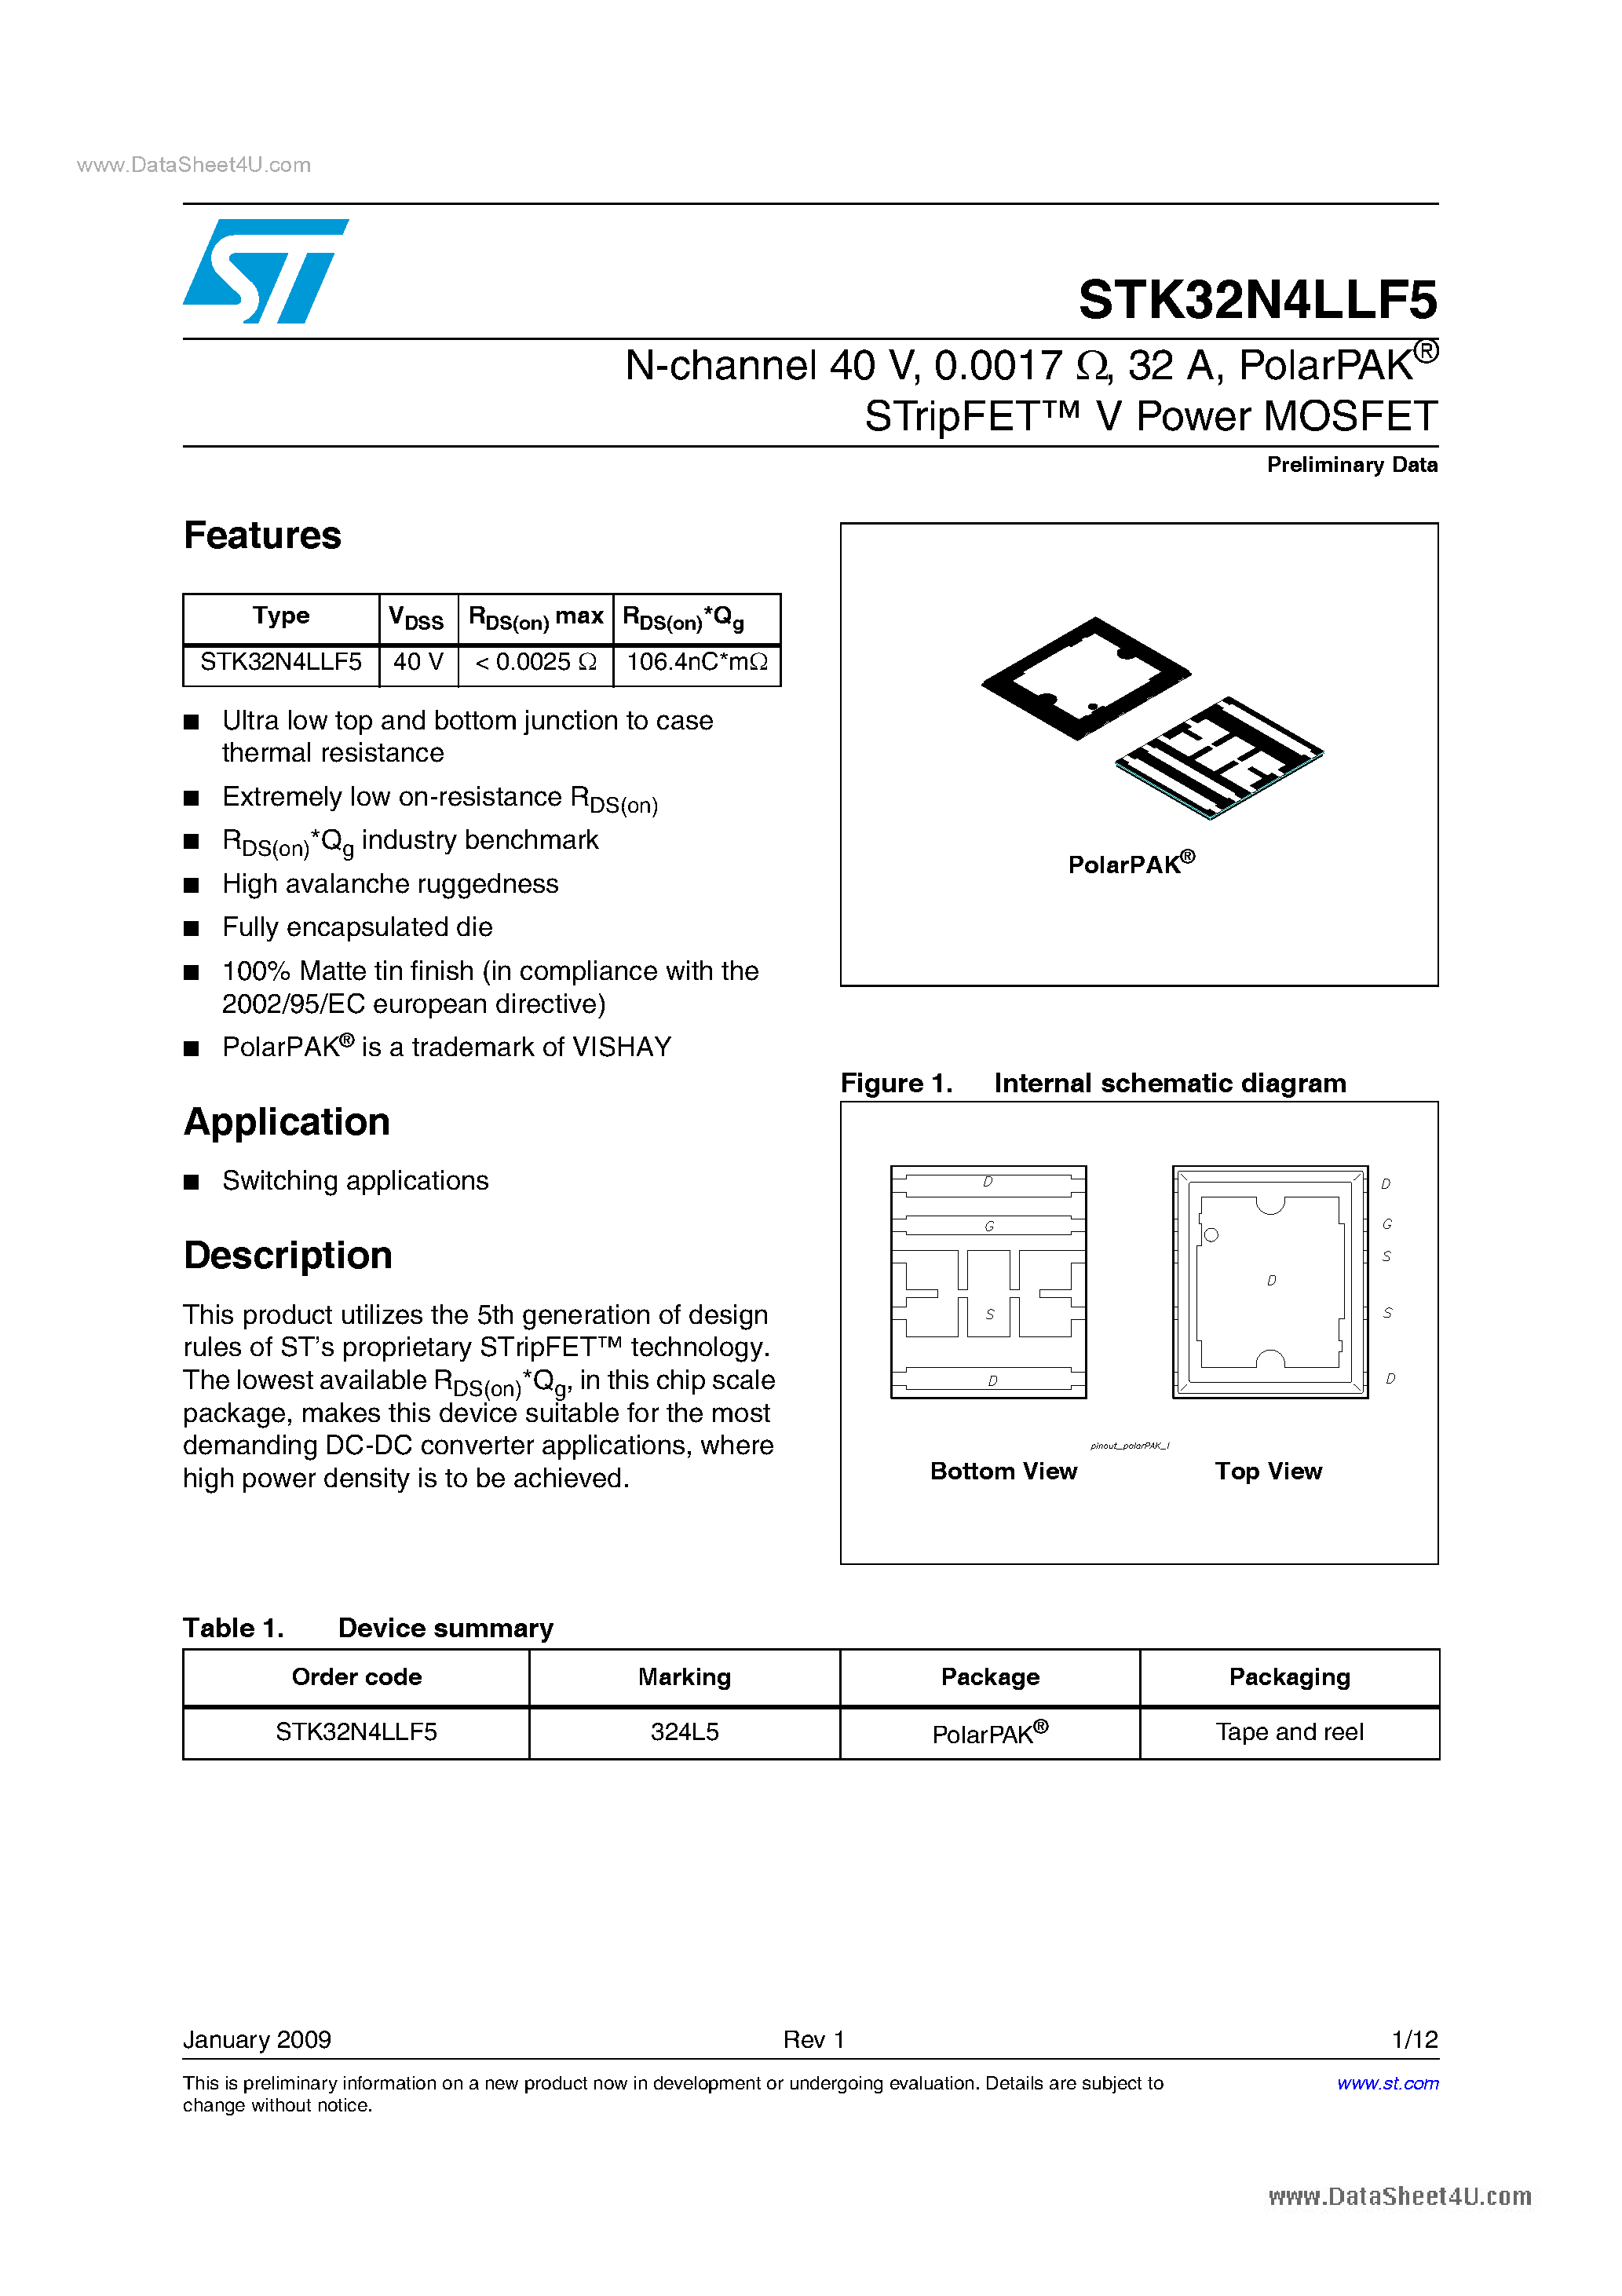 Datasheet STK32N4LLF5 - Power MOSFET page 1